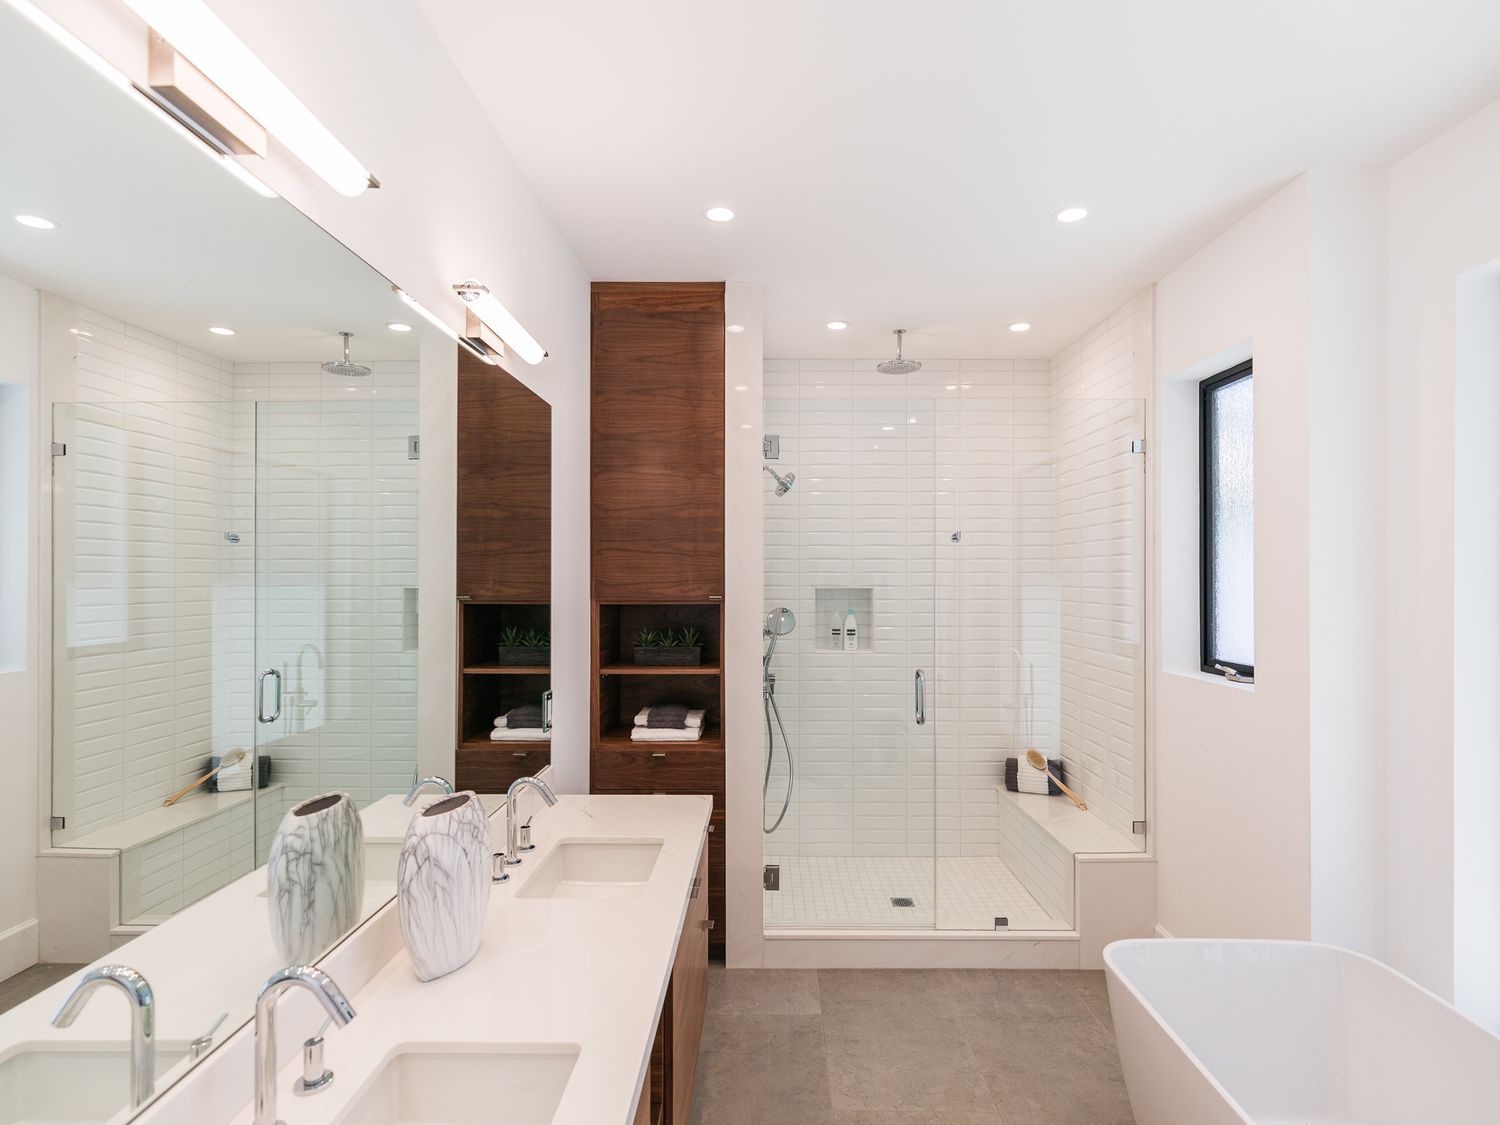 Banheiro moderno com gabinete de madeira cercado por paredes e bancadas brancas